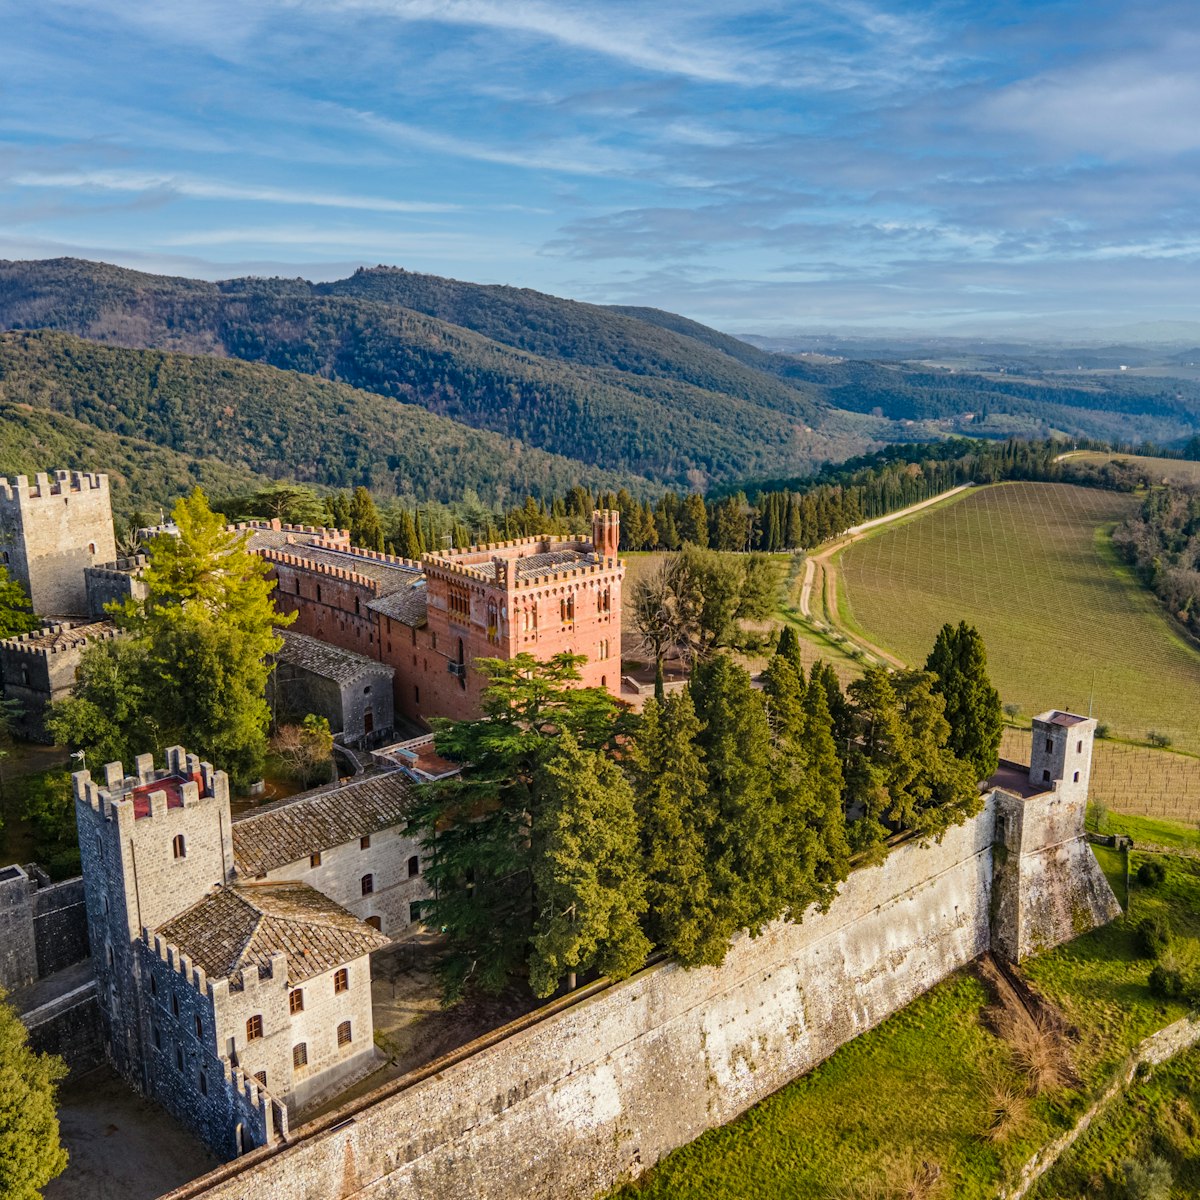 Brolio, Gaiole in Chianti, Italy - April 26 2021: Aerial view of the famous Castello di Brolio in Chianti Wine Area. ; Shutterstock ID 1965200383; purchase_order: 65050; job: poi; client: ; other:
1965200383